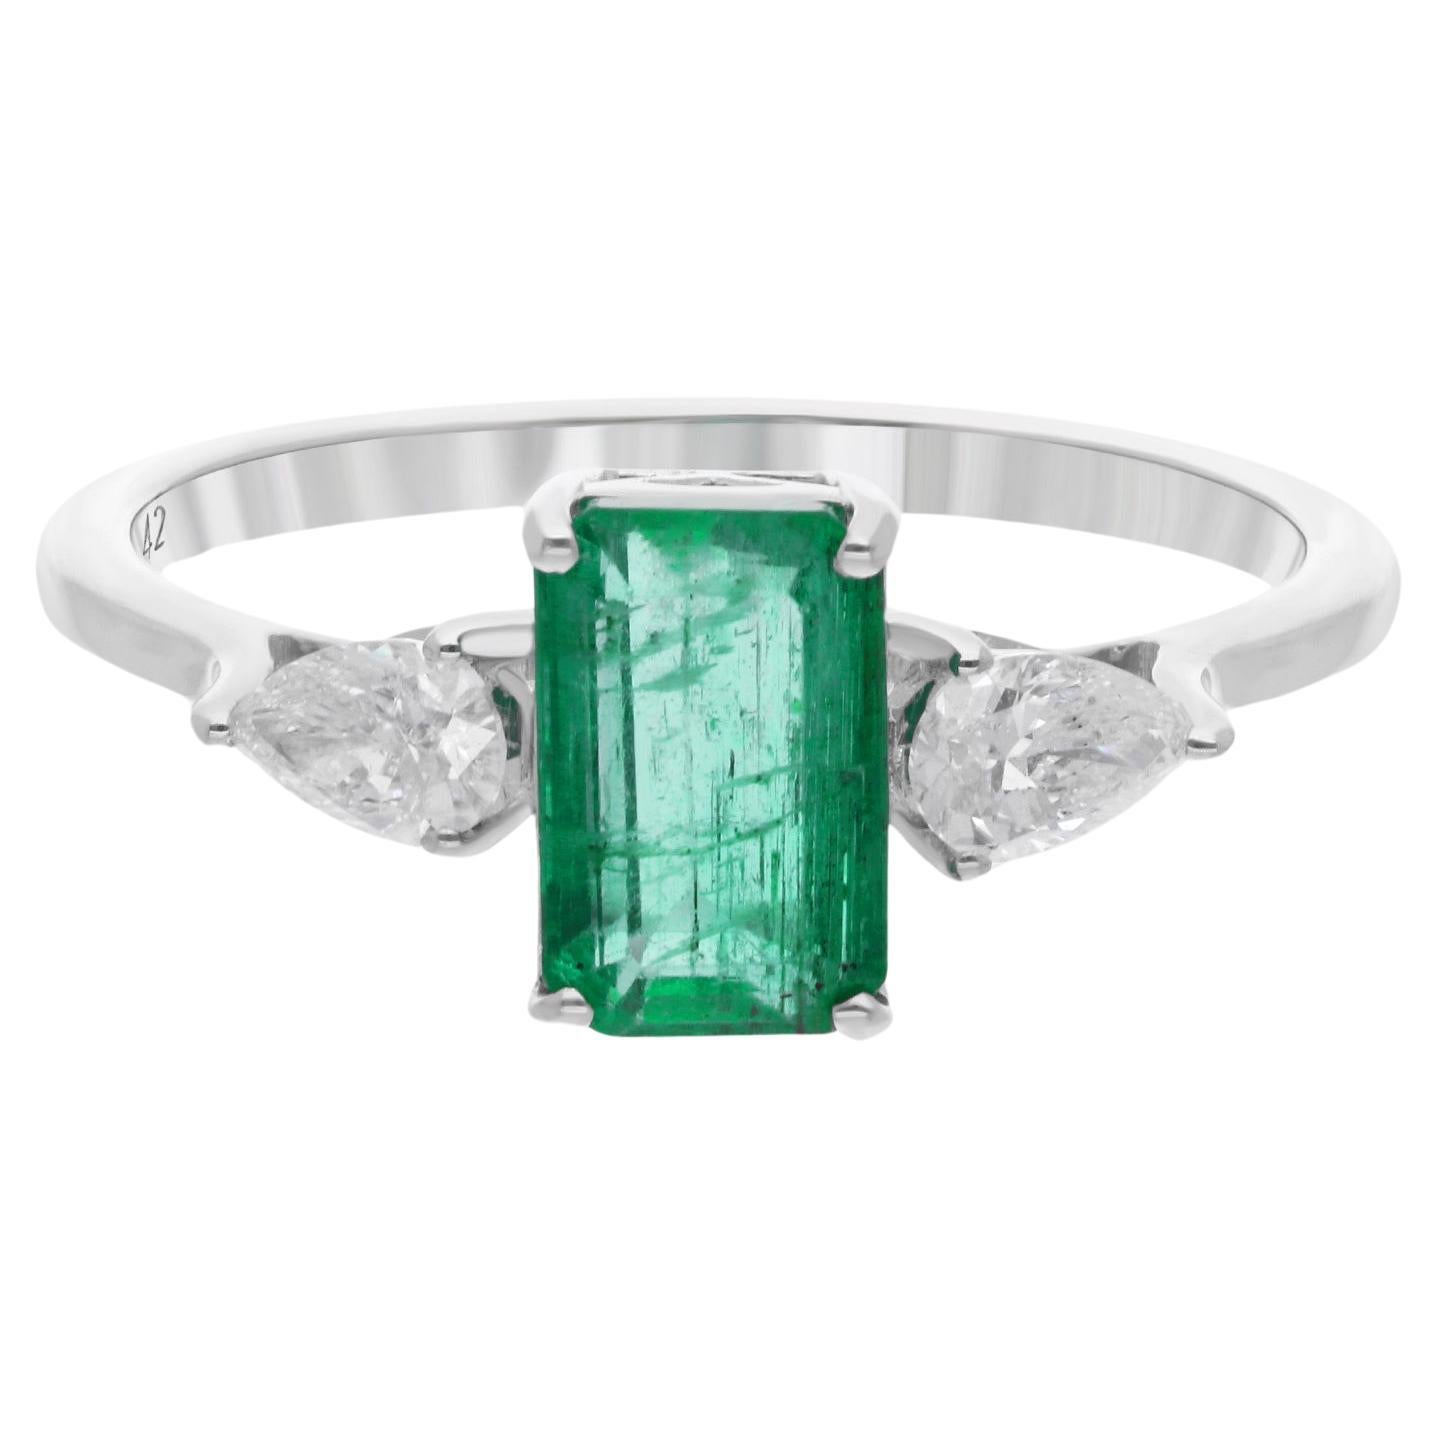 Natürlicher sambischer Smaragd Edelstein Ring Birne Diamant 18 Karat Weißgold Schmuck